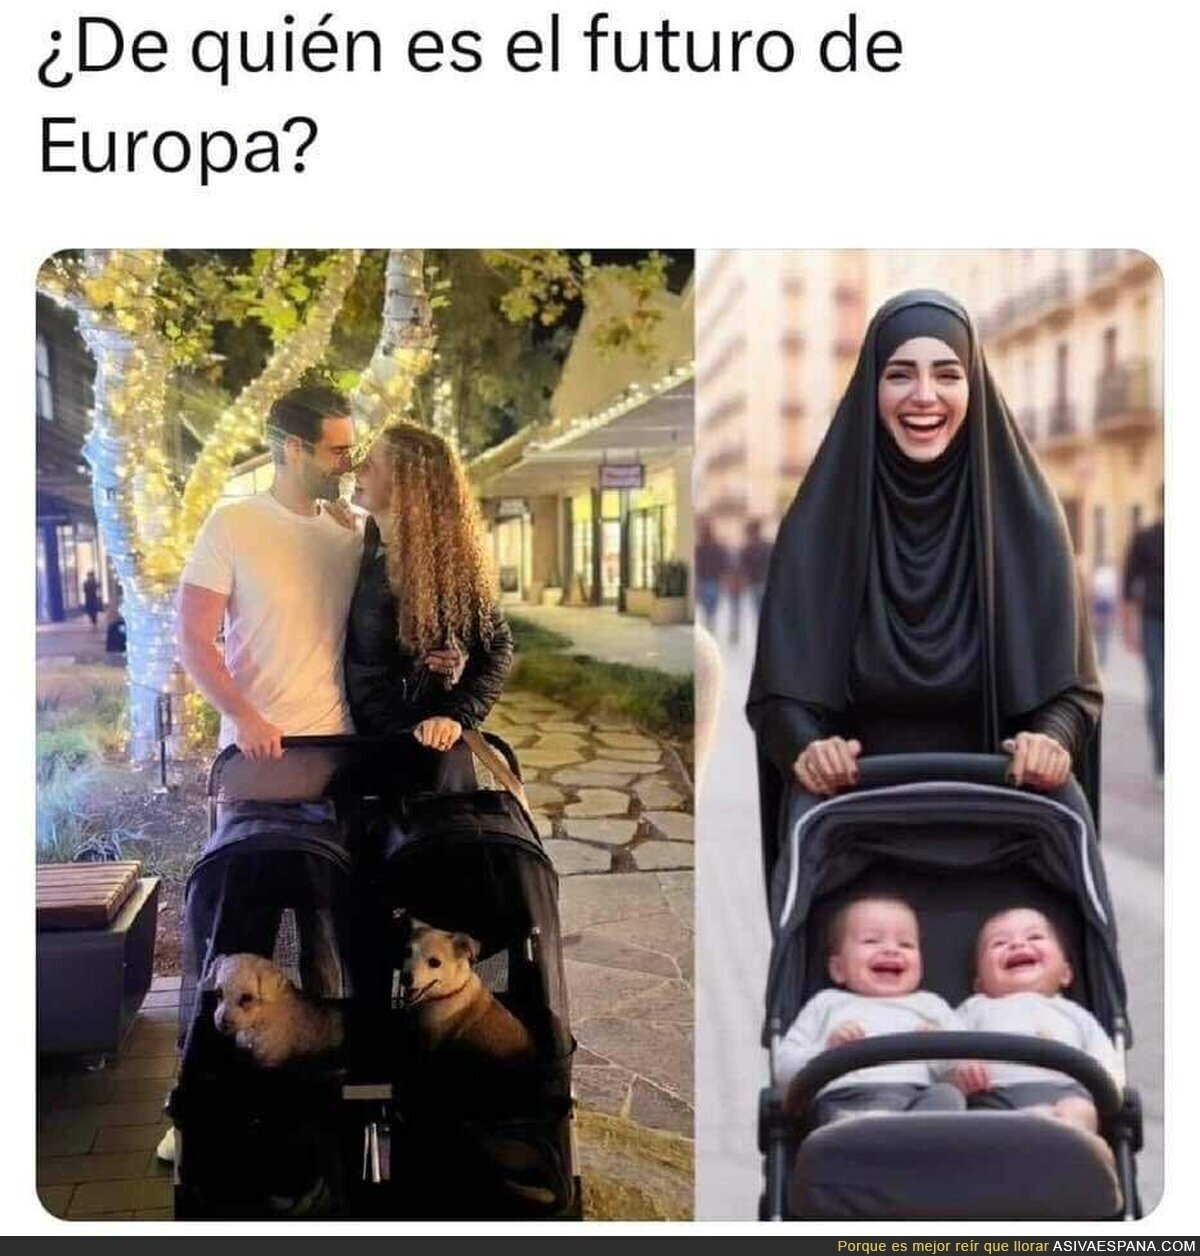 El futuro de Europa